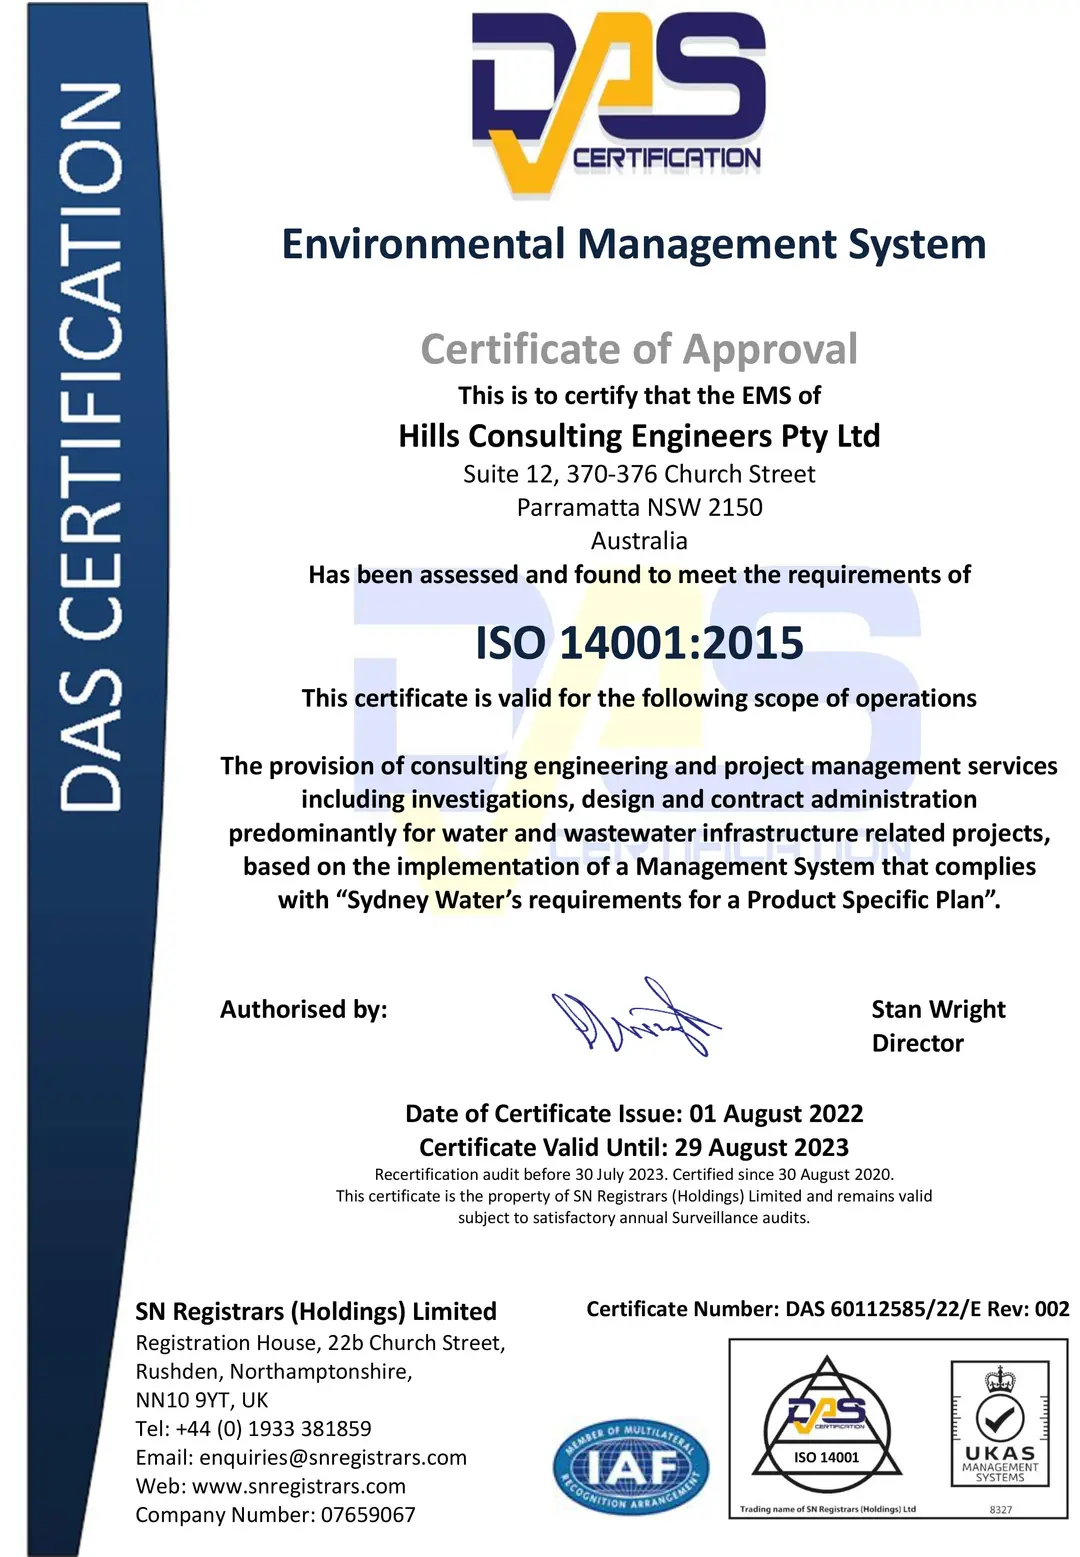 DAS ISO Certificate - Environmental